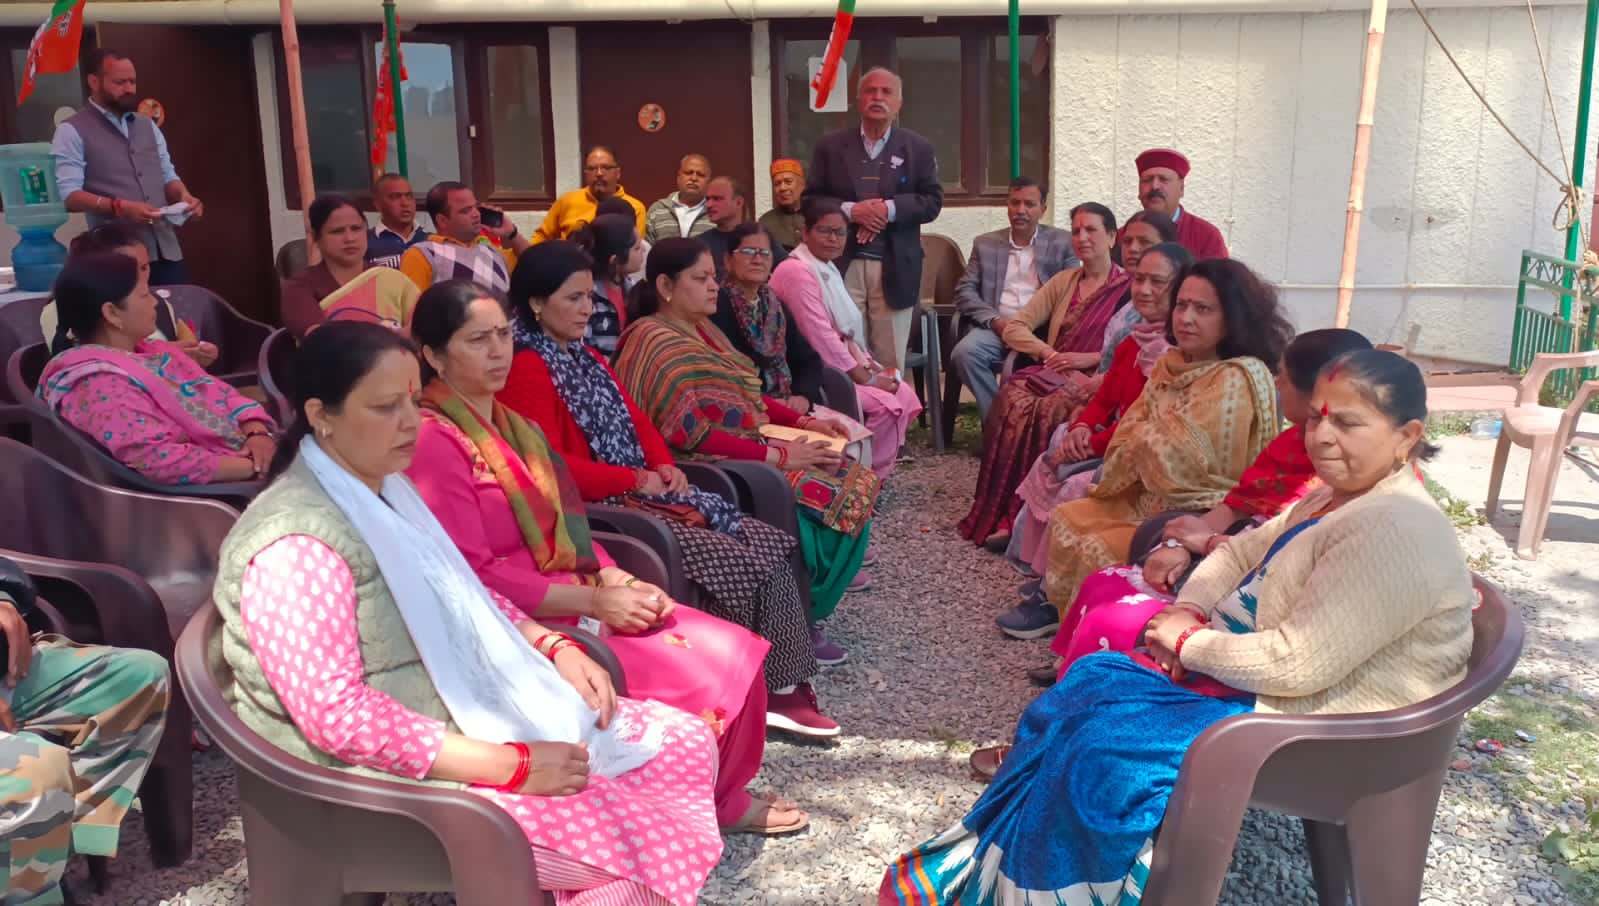 उत्तराखंड में 11 अप्रैल को प्रधानमंत्री मोदी का दौरा,भाजपा कार्यकर्ताओं में भारी उत्साह